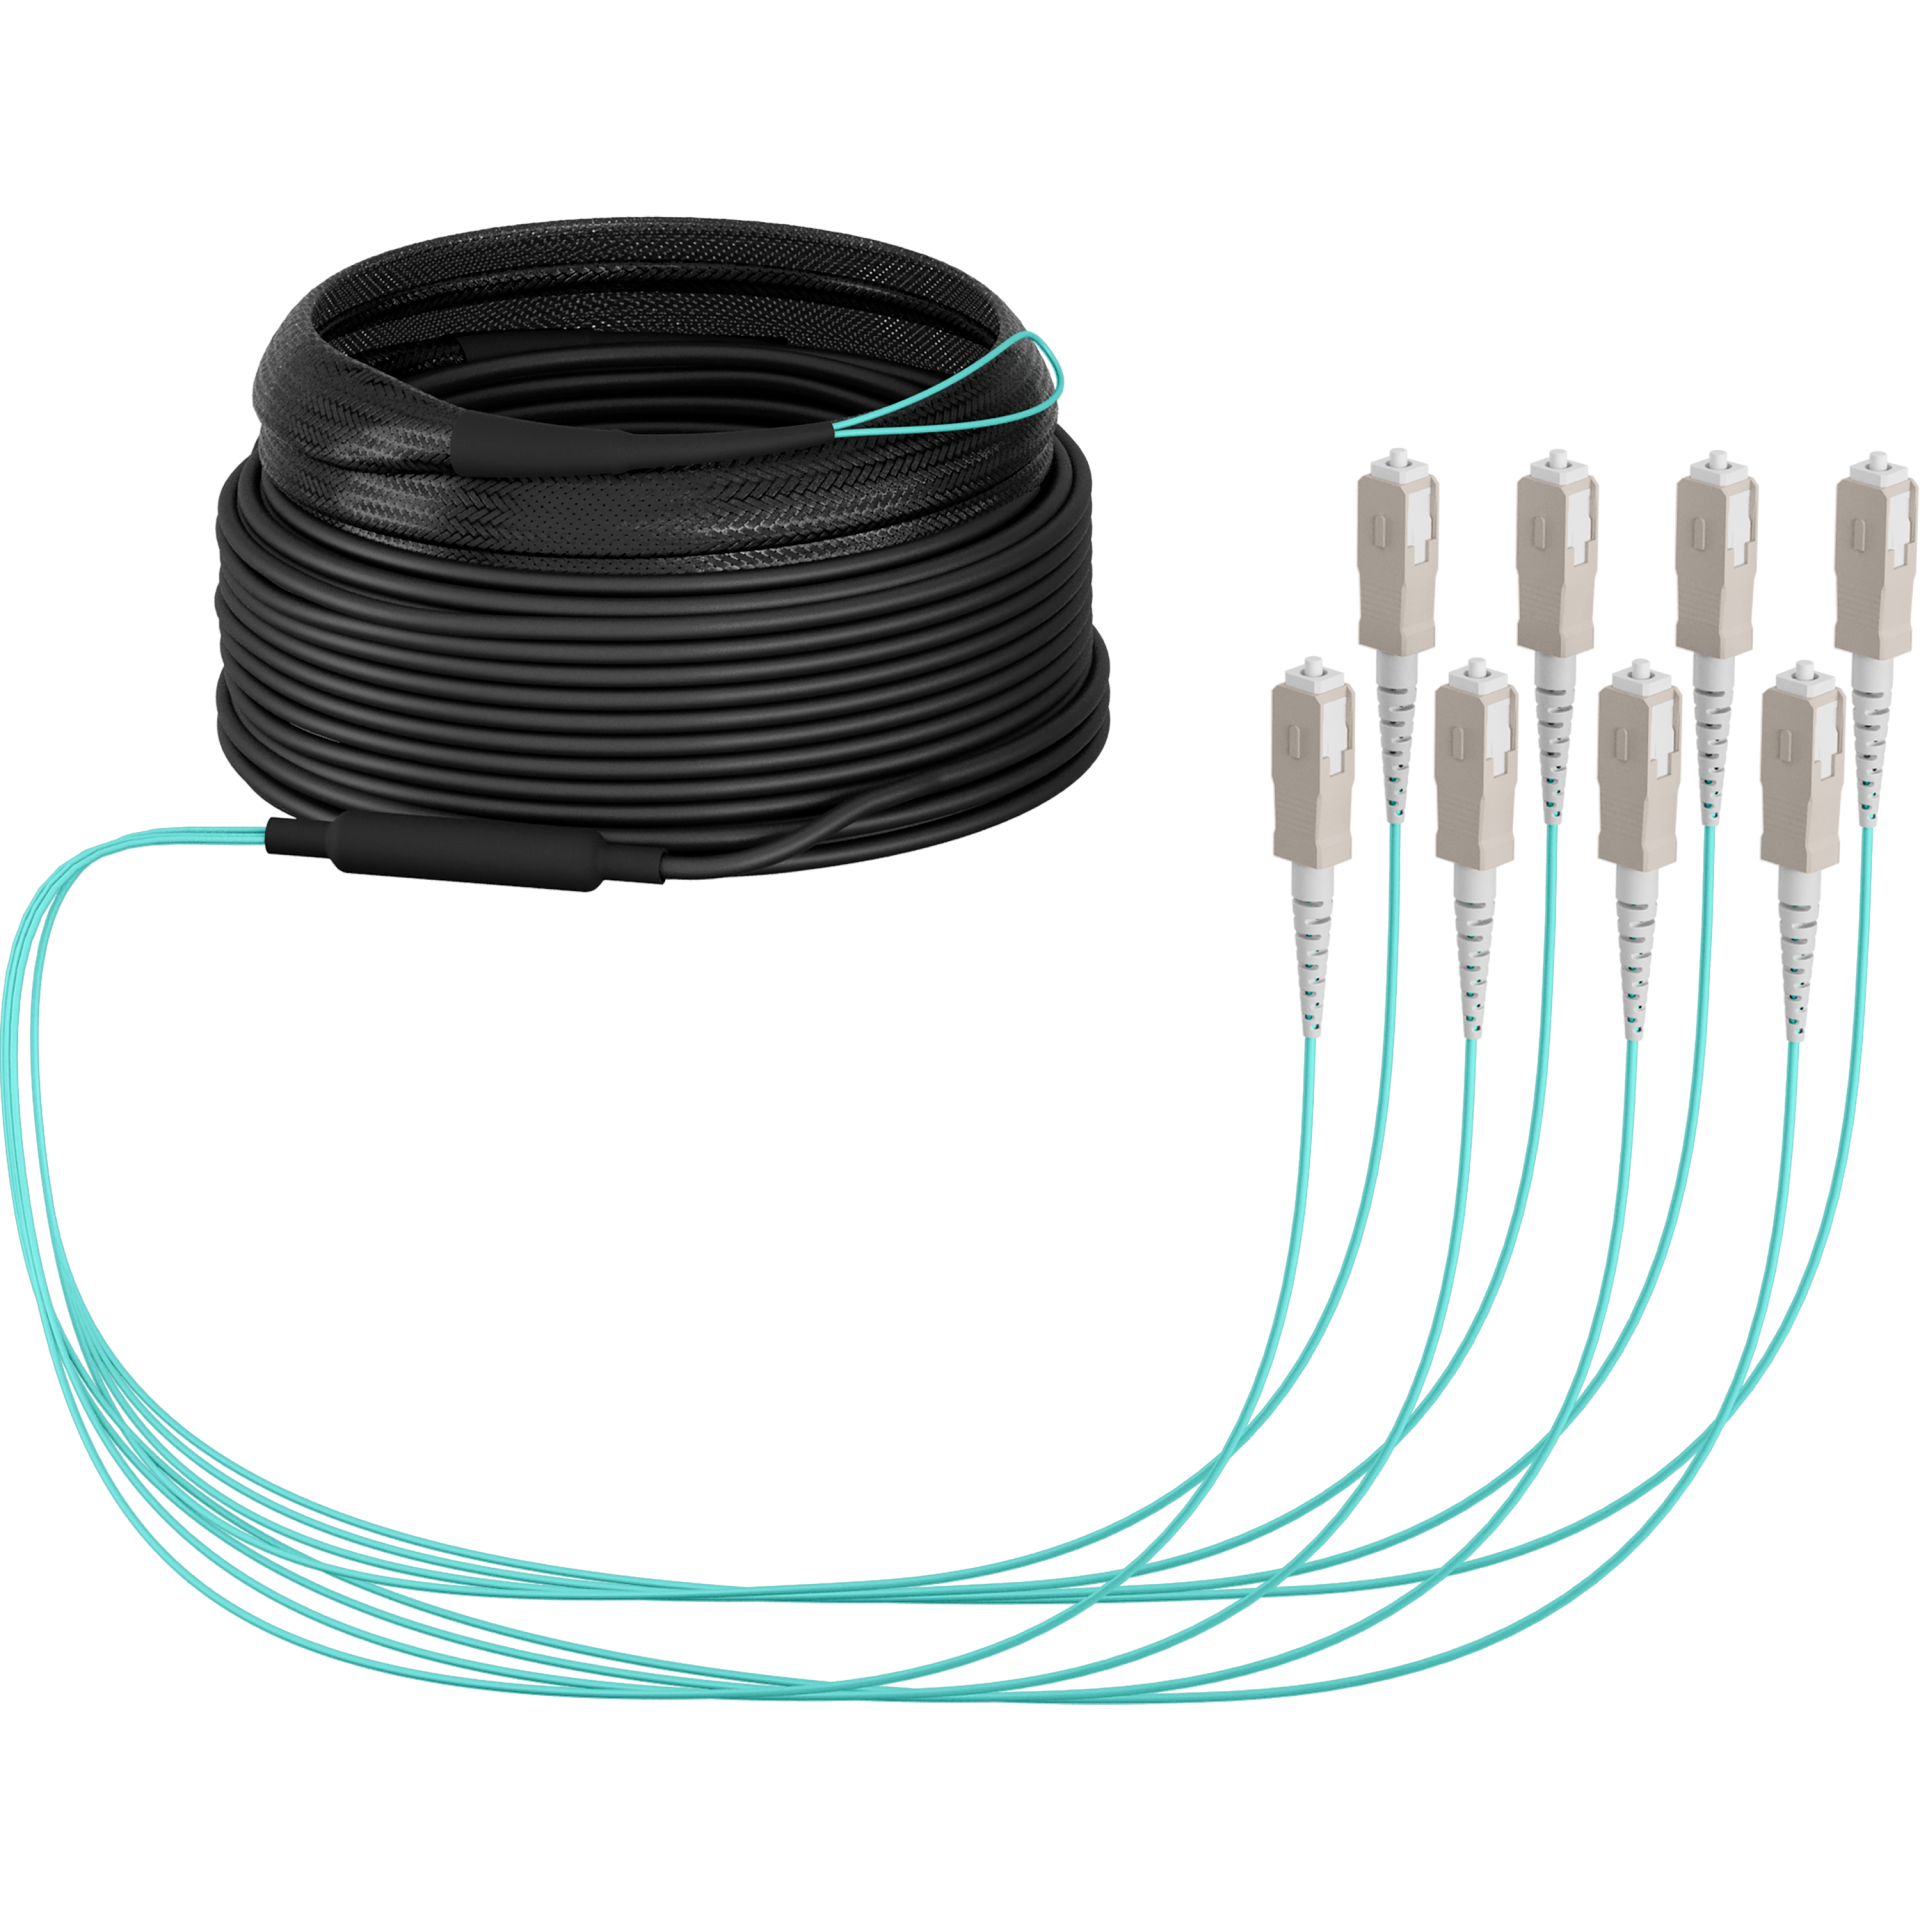 Trunk cable U-DQ(ZN)BH OM3 8G (1x8) SC-SC,100m Dca LSZH